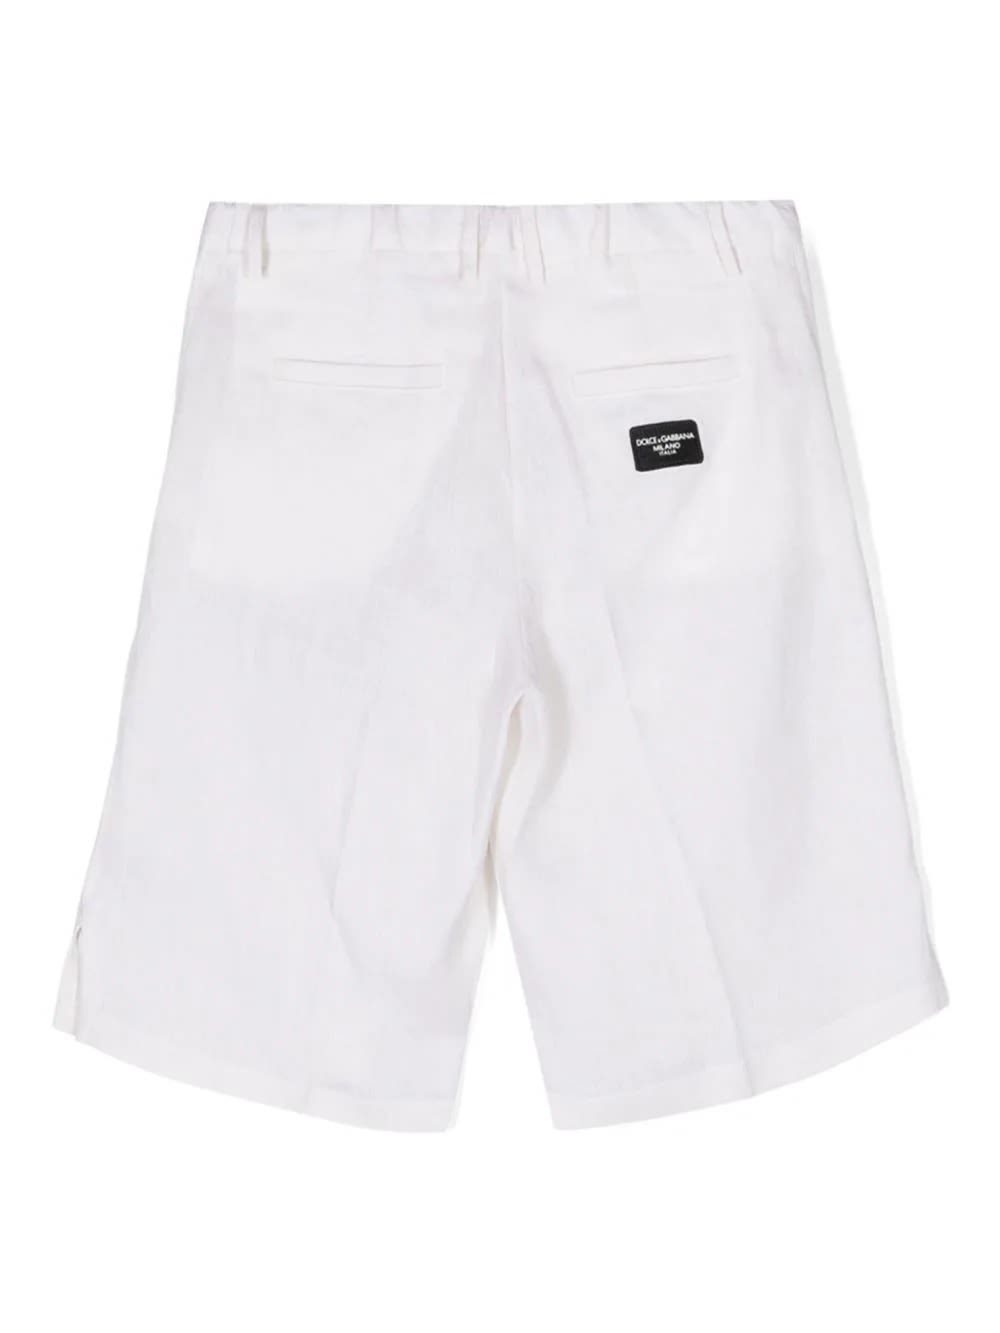 Shop Dolce & Gabbana White Linen Bermuda Shorts